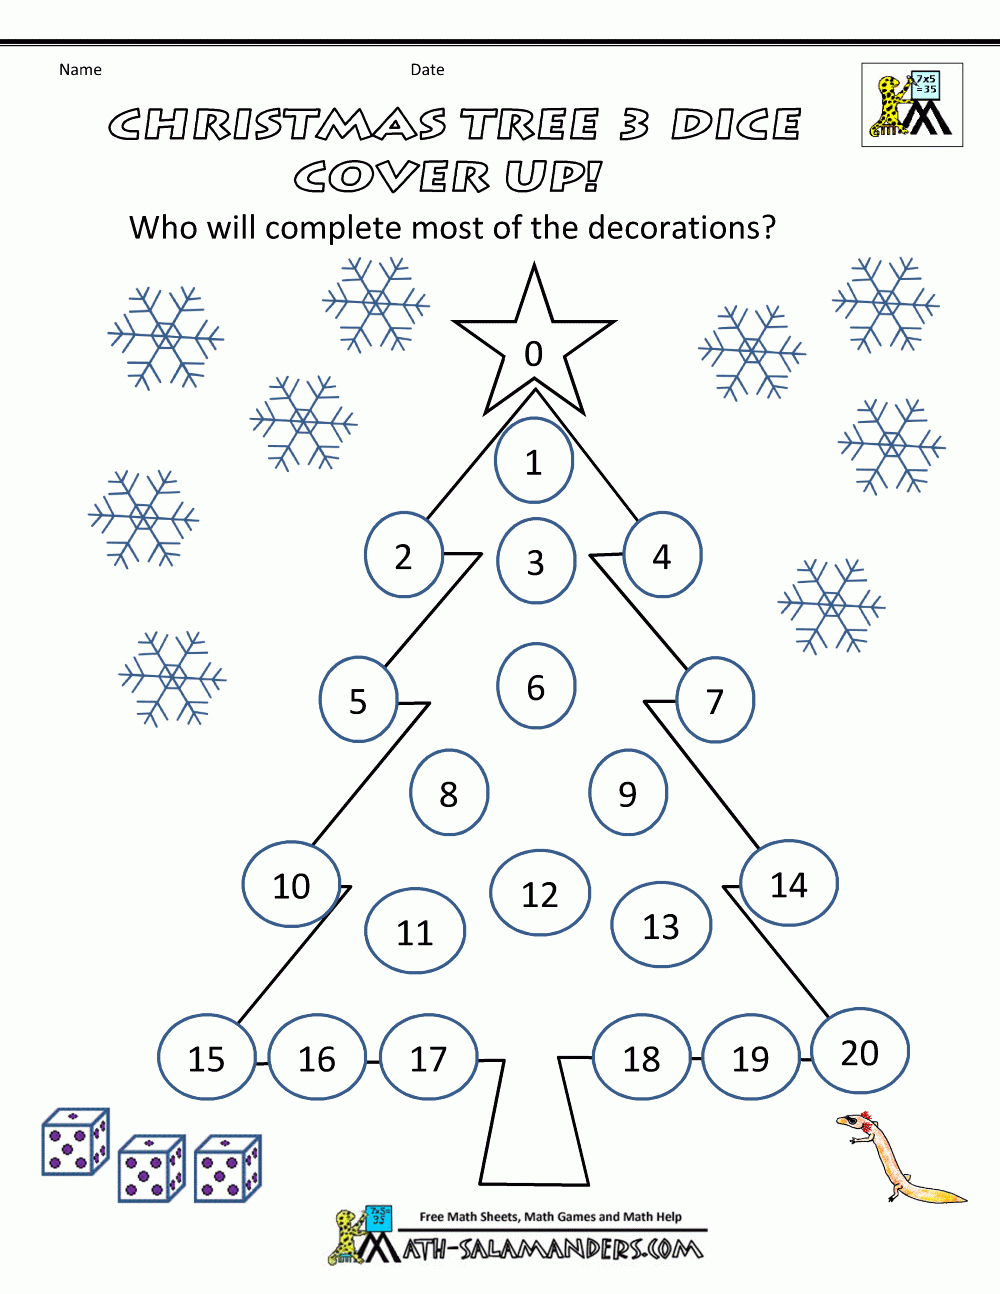 Christmas Math Games - Christmas Printable Puzzles Games